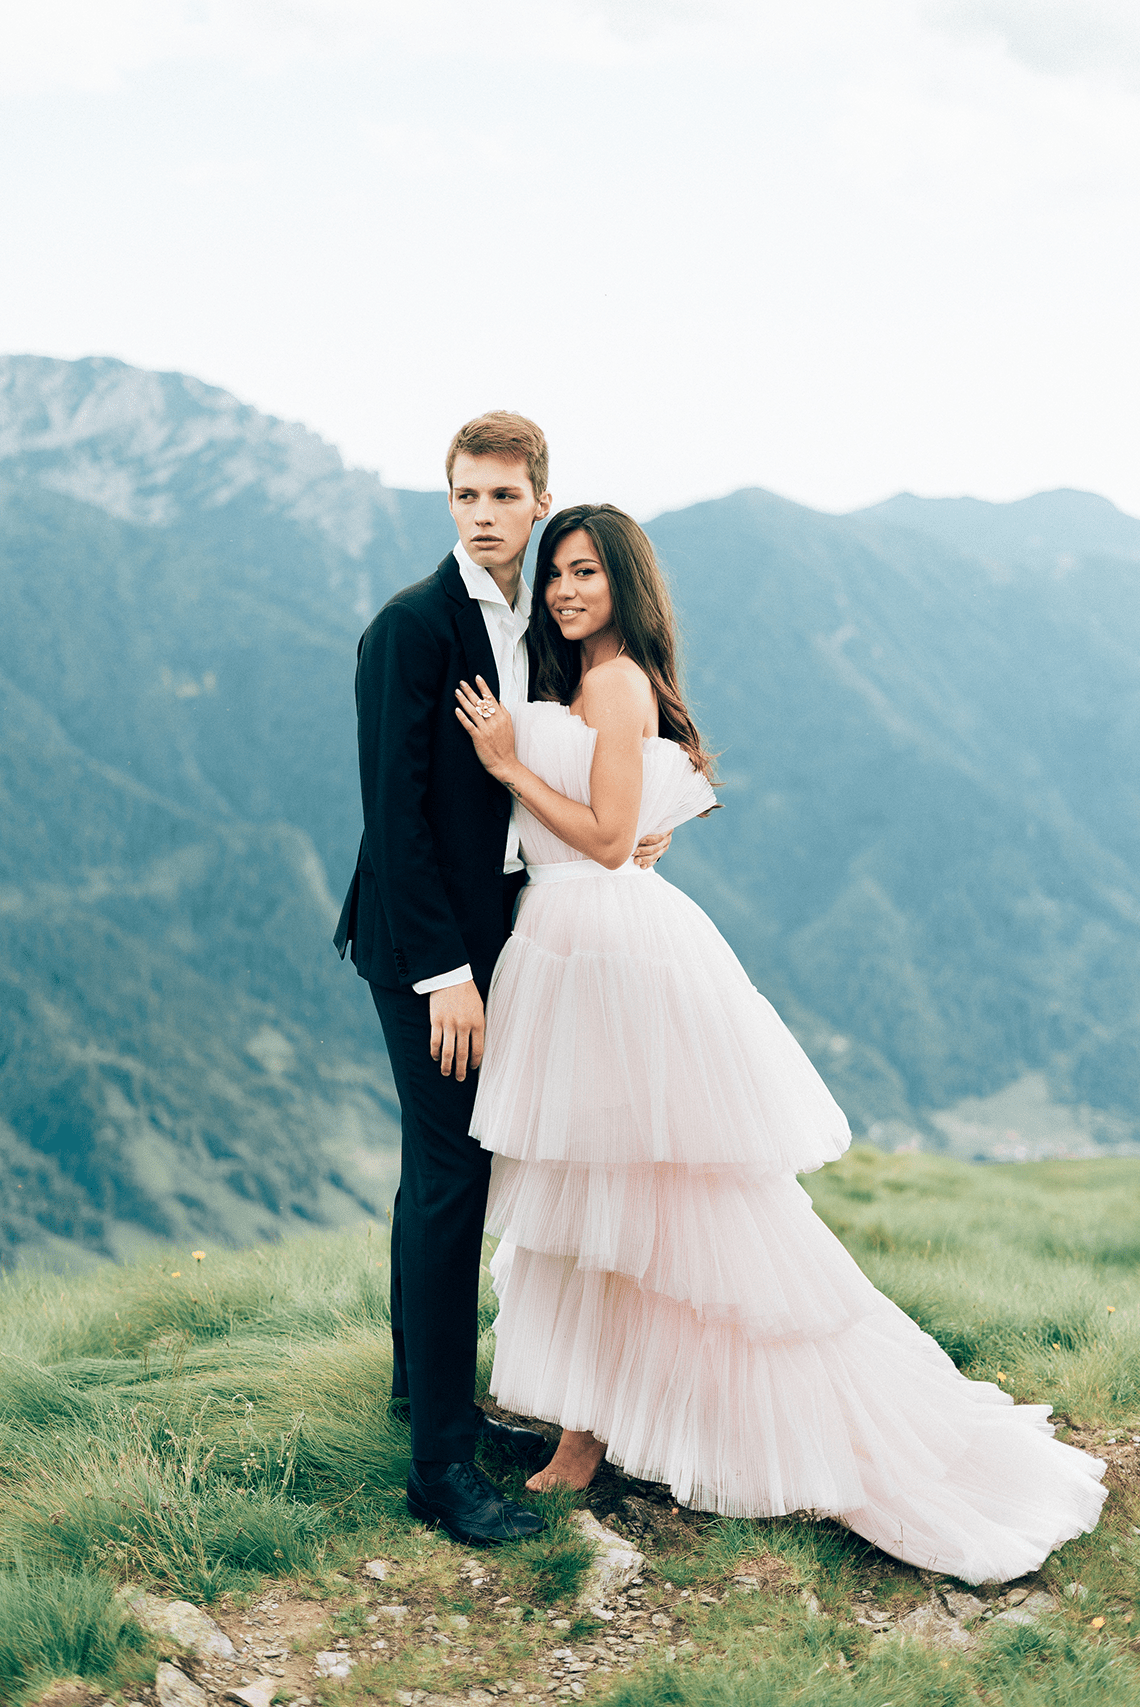 Enchanting Italian Alps Wedding Inspiration Svetlana Cozlitina 26 - 30 chiếc áo dài cưới màu hồng dành cho cô dâu yêu thích sắc màu